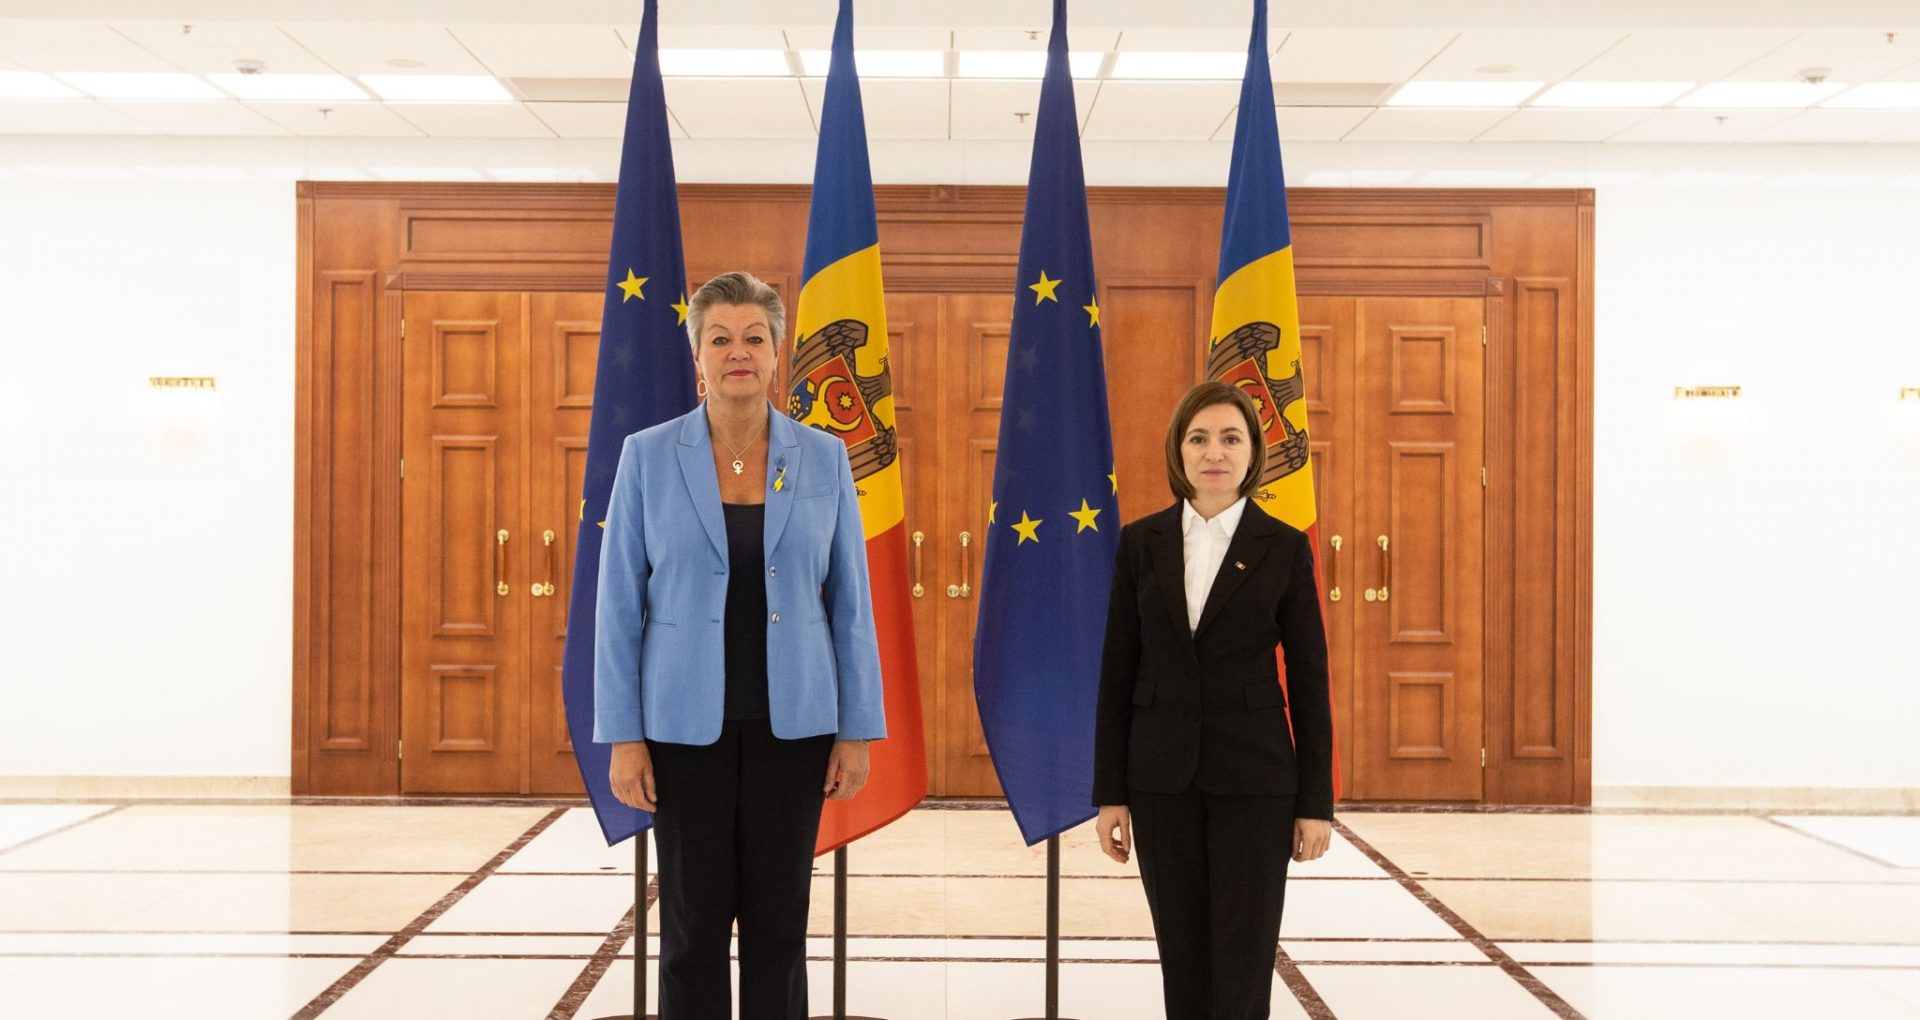 Situația de securitate din regiune în contextul războiului din Ucraina și valul de refugiați – subiectele discutate de președinta Sandu cu Ilva Johansson, comisara europeană pentru Afaceri Interne